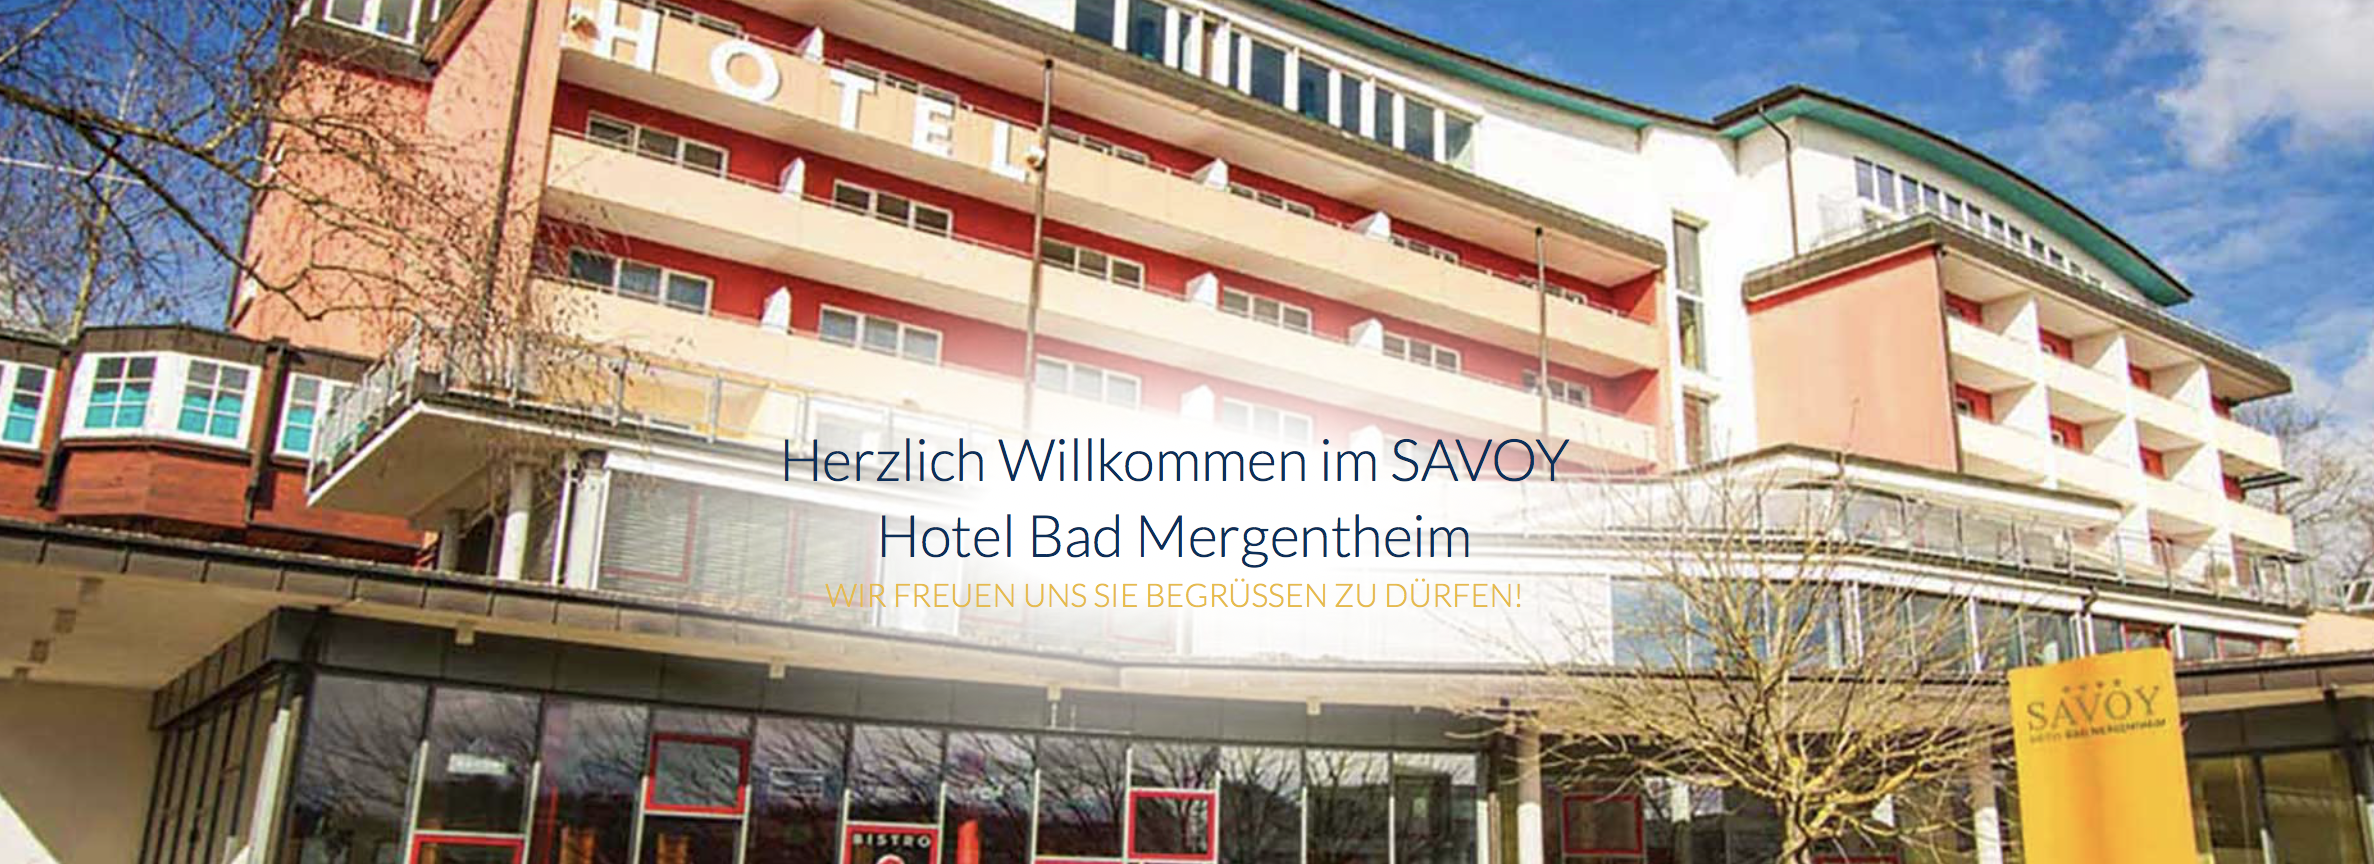 SAVOY Hotel Bad Mergentheim